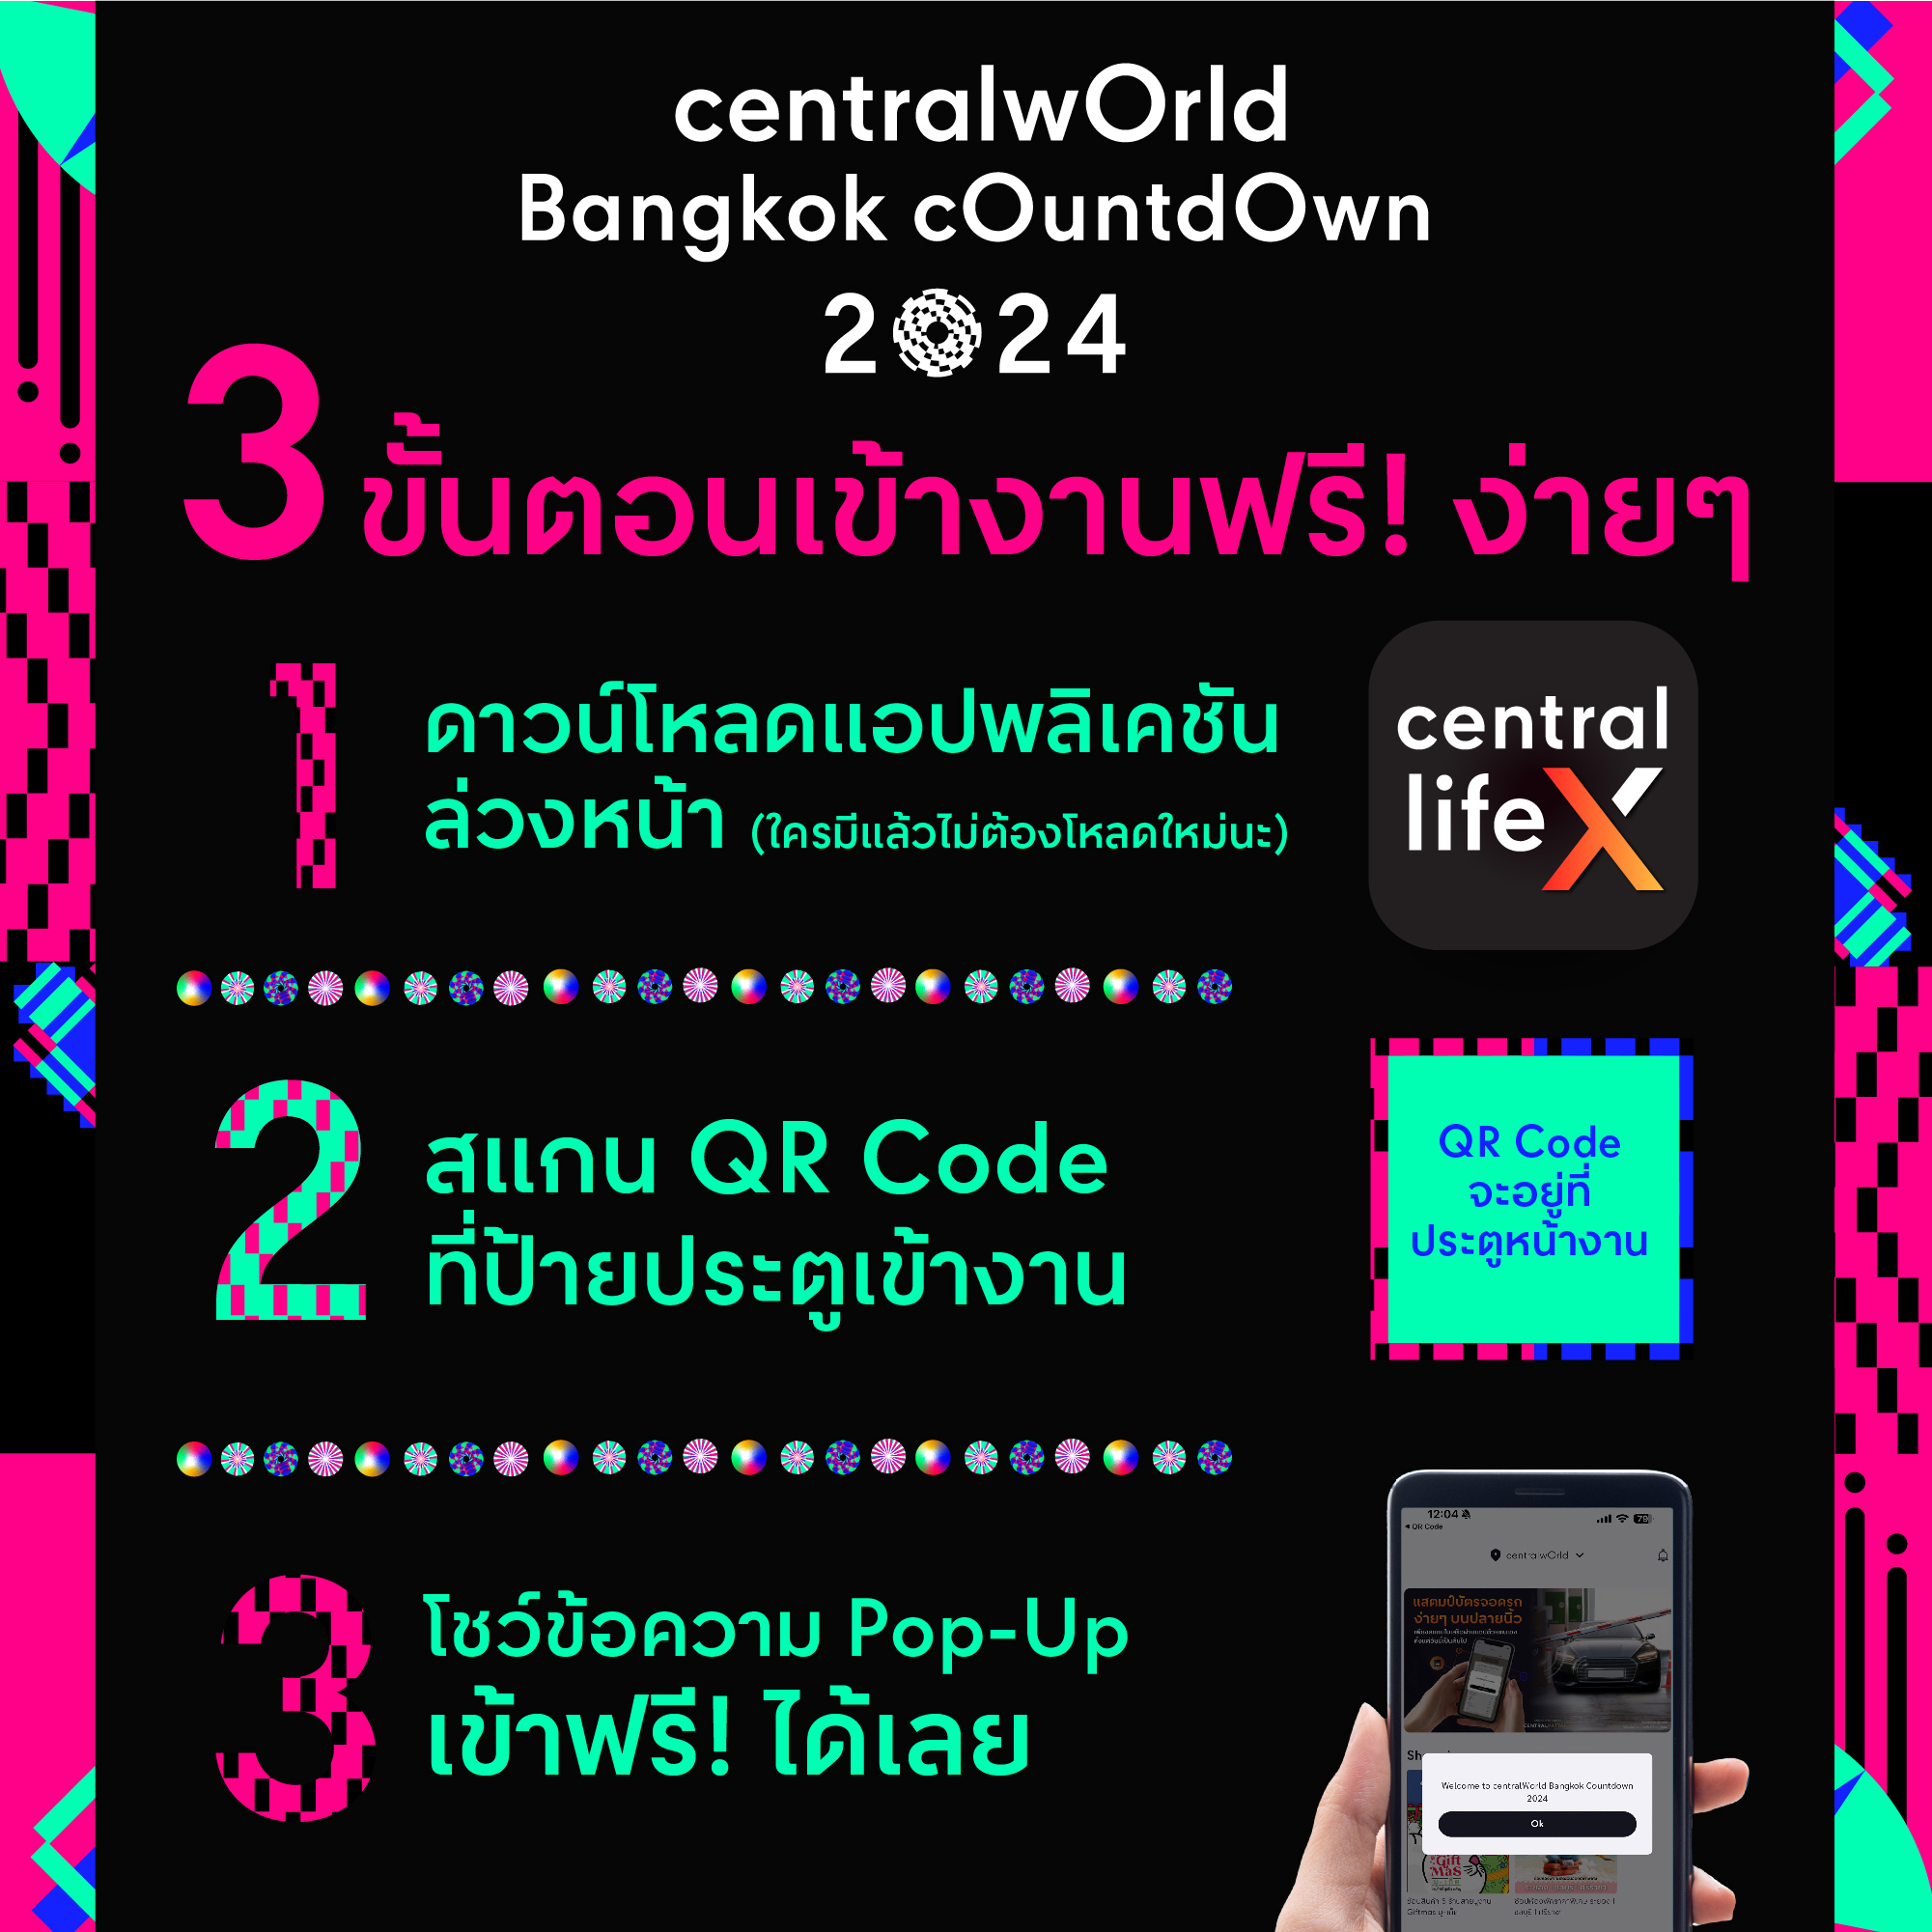 centralwOrld Bangkok Countdown 2024